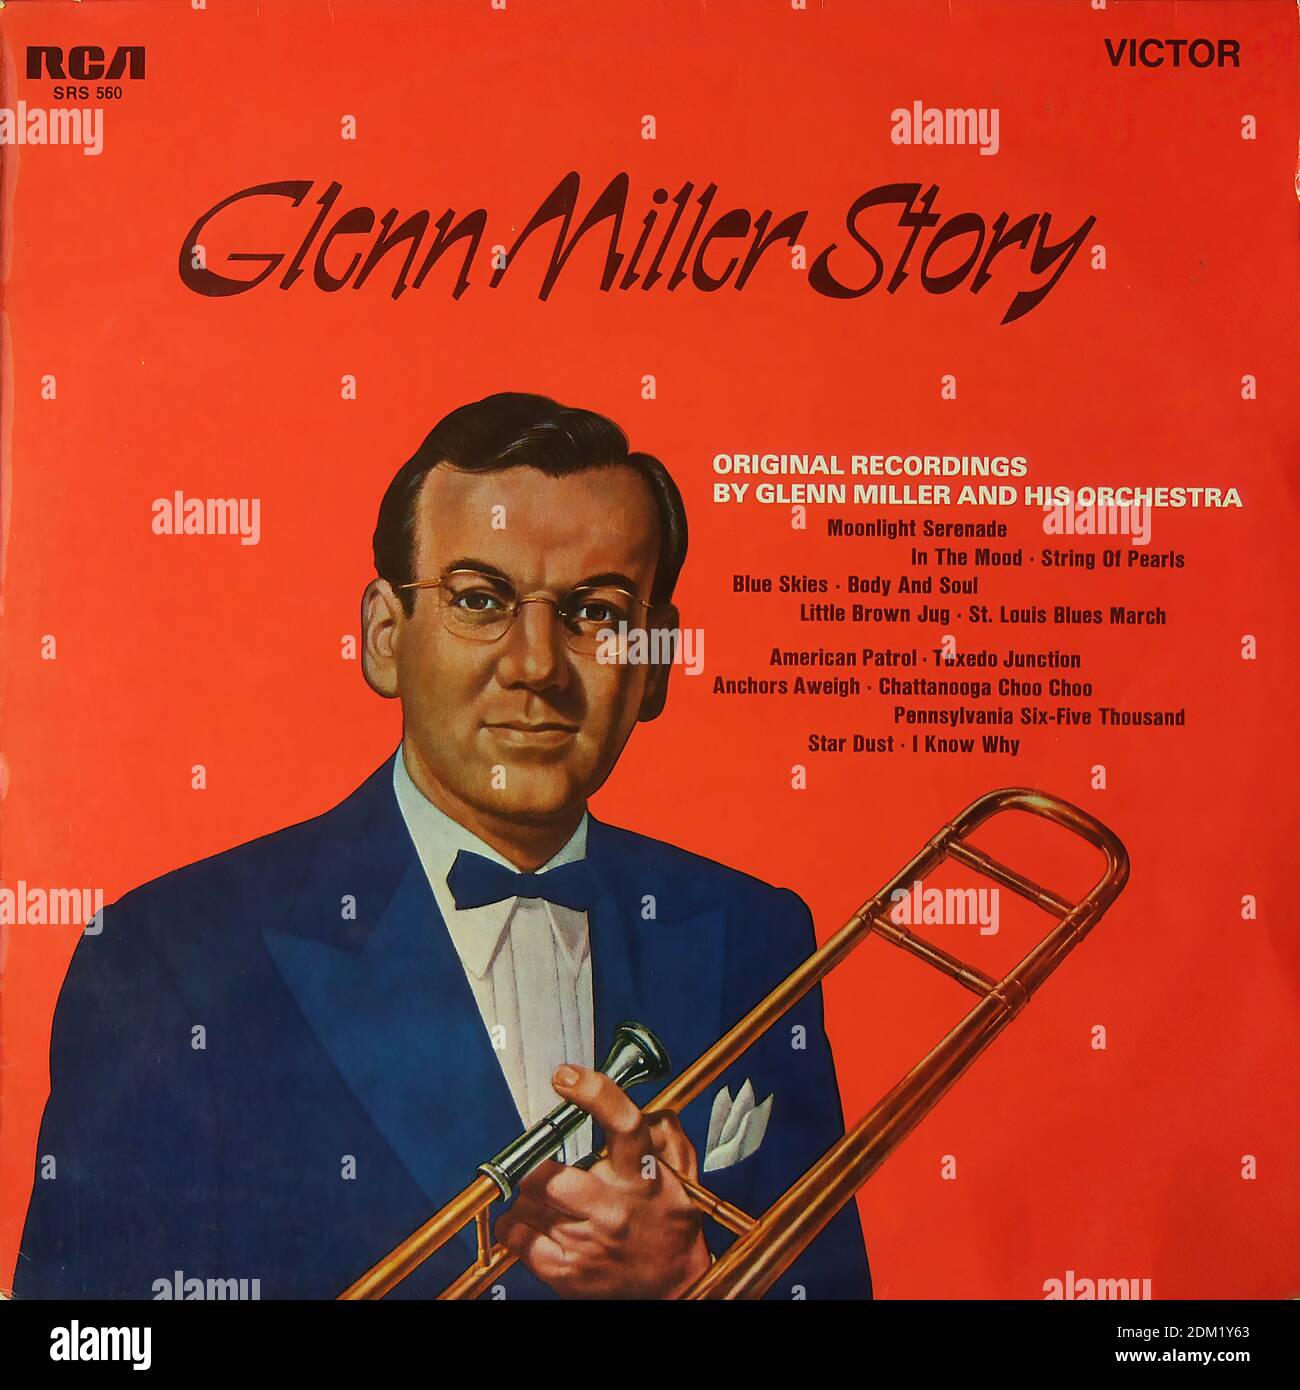 Glenn Miller Story, RCA Victor - - Vintage vinyl album cover Stock Photo